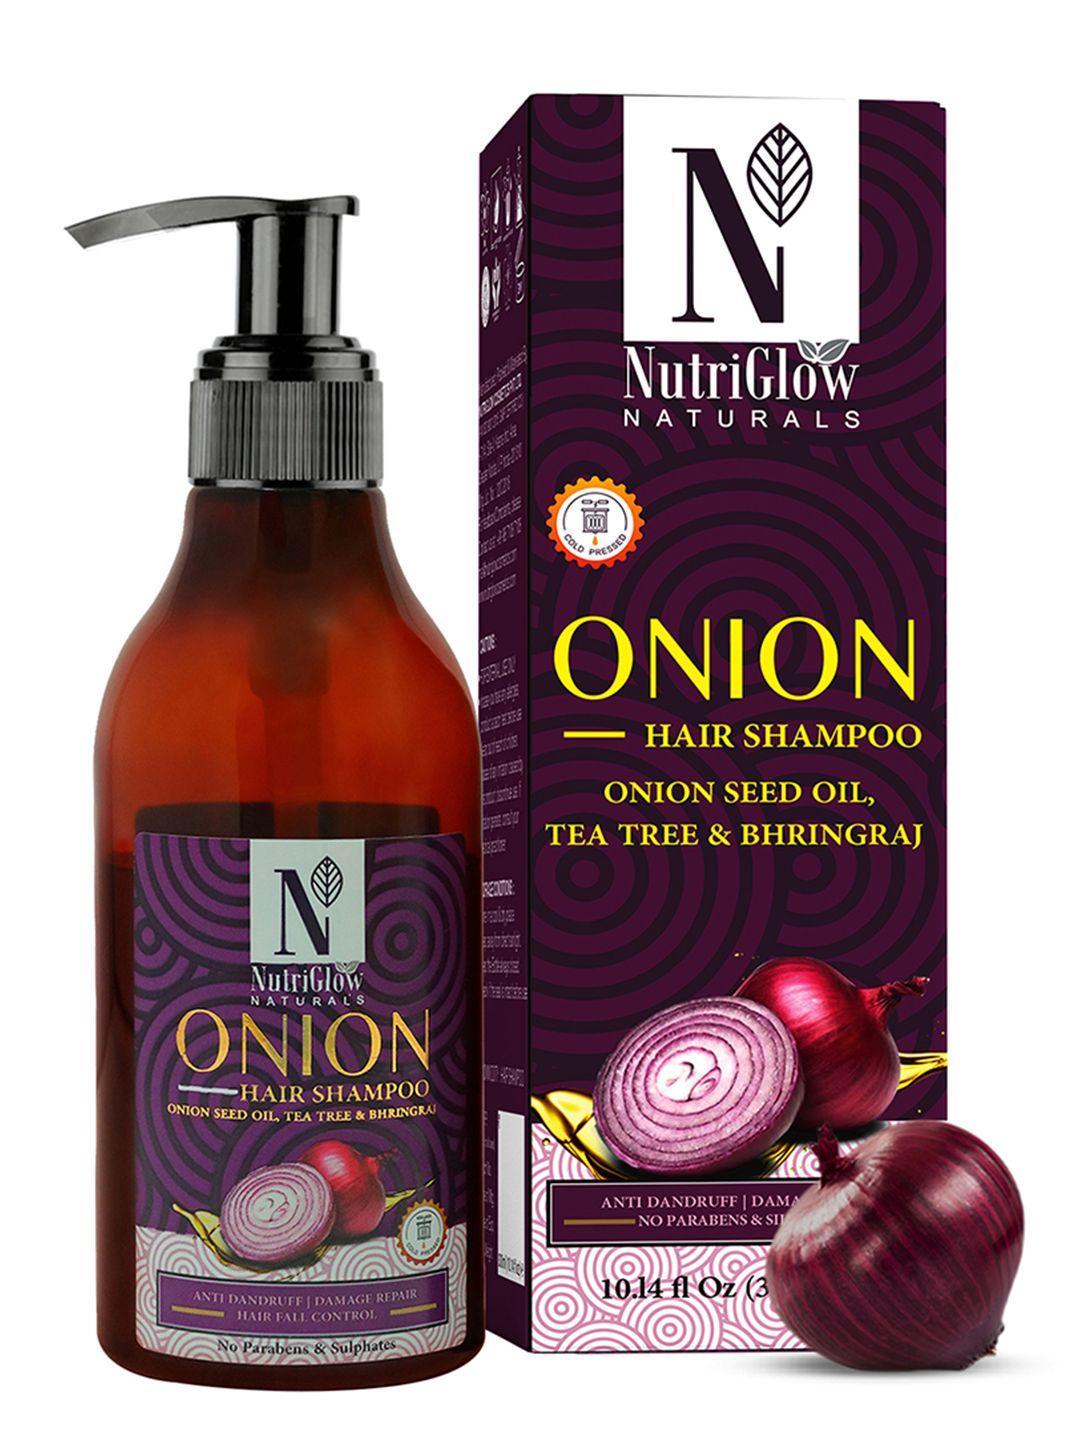 nutriglow-naturals-onion-anti-dandruff-shampoo-300-ml